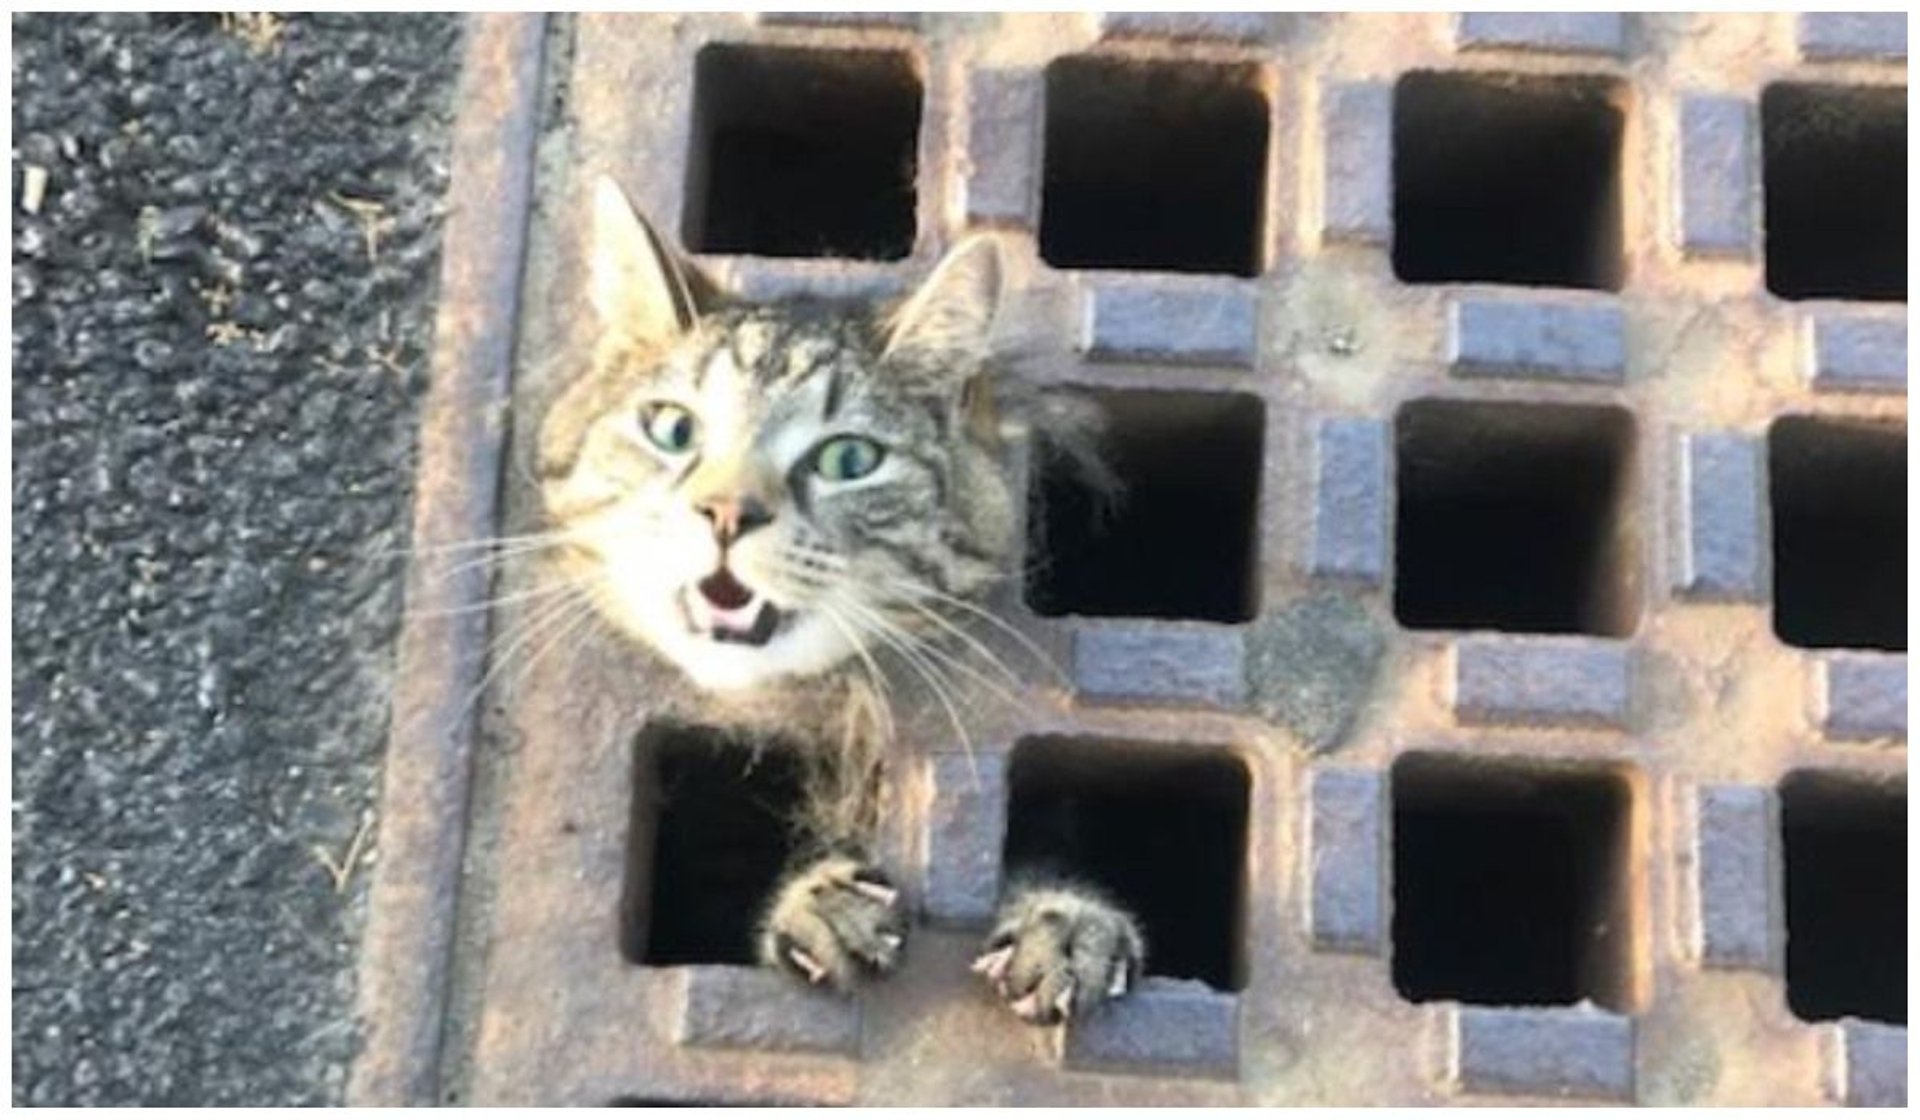 kot uwięziony w studzience kanalizacyjnej